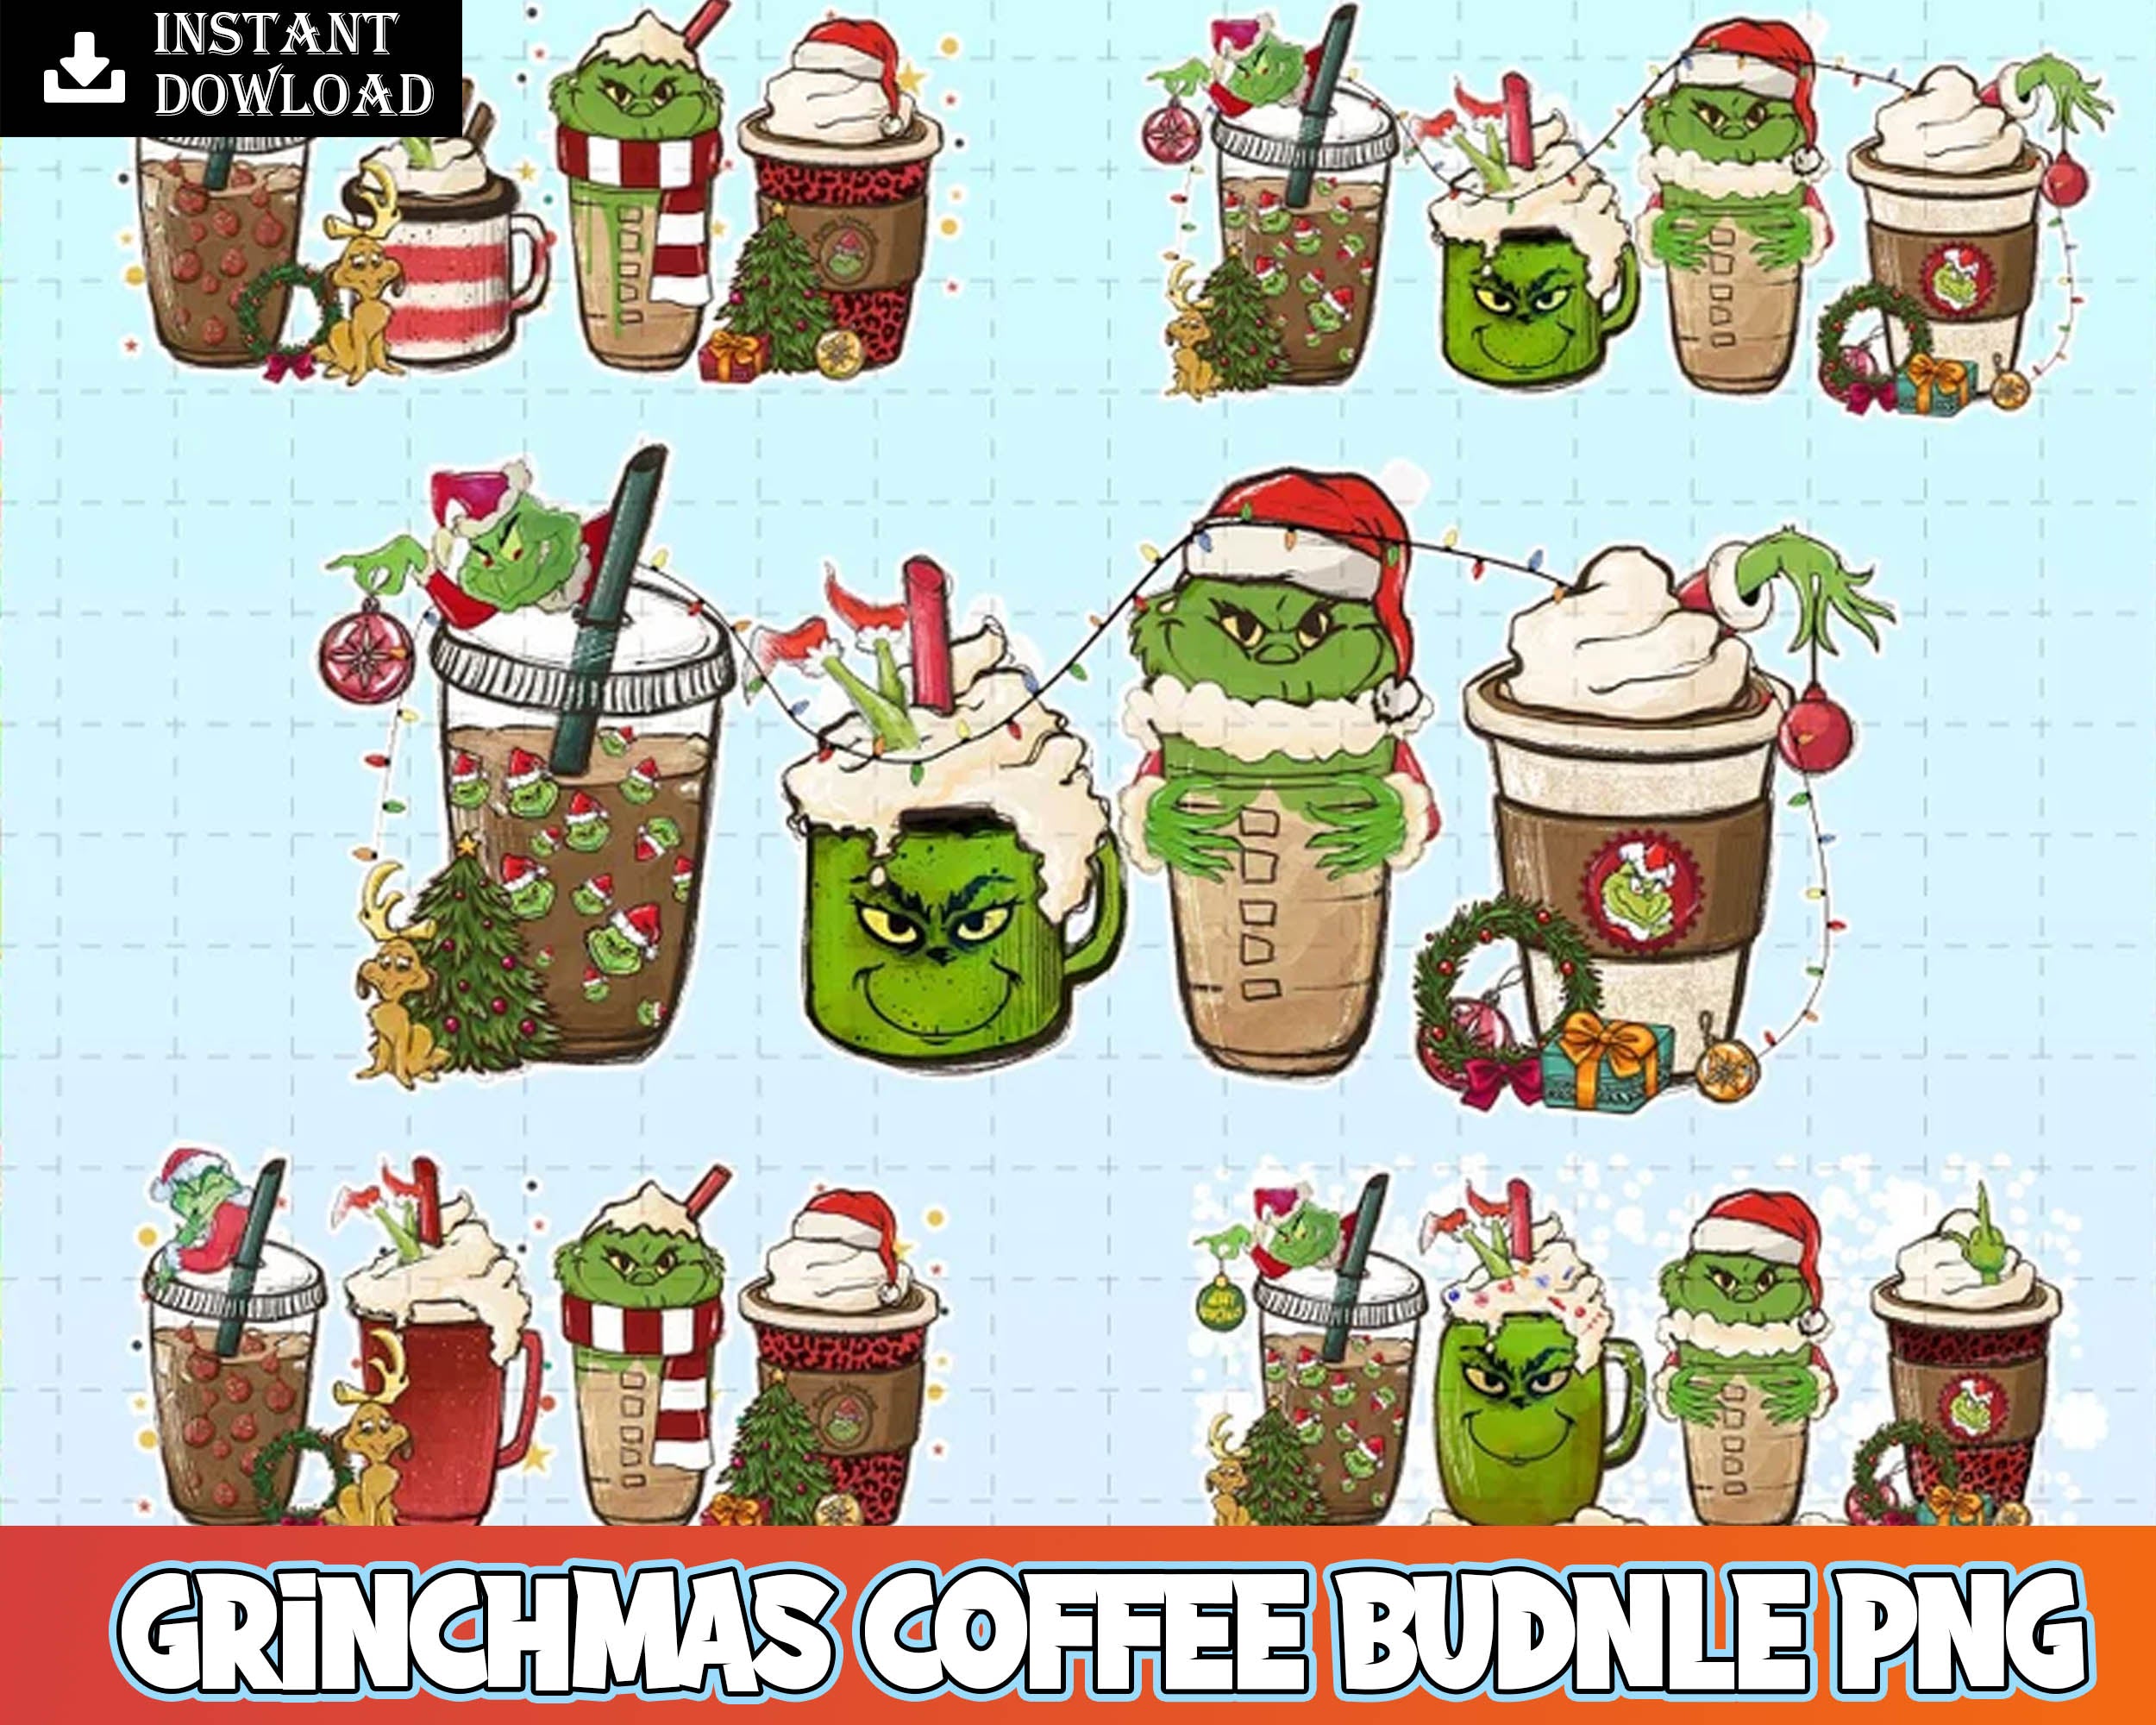 Version 2.0 - Ultimate Grinch Bundle SVG, Grinch SVG, Grinch Cutting Image, Christmas Grinch svg png eps dxf jpg